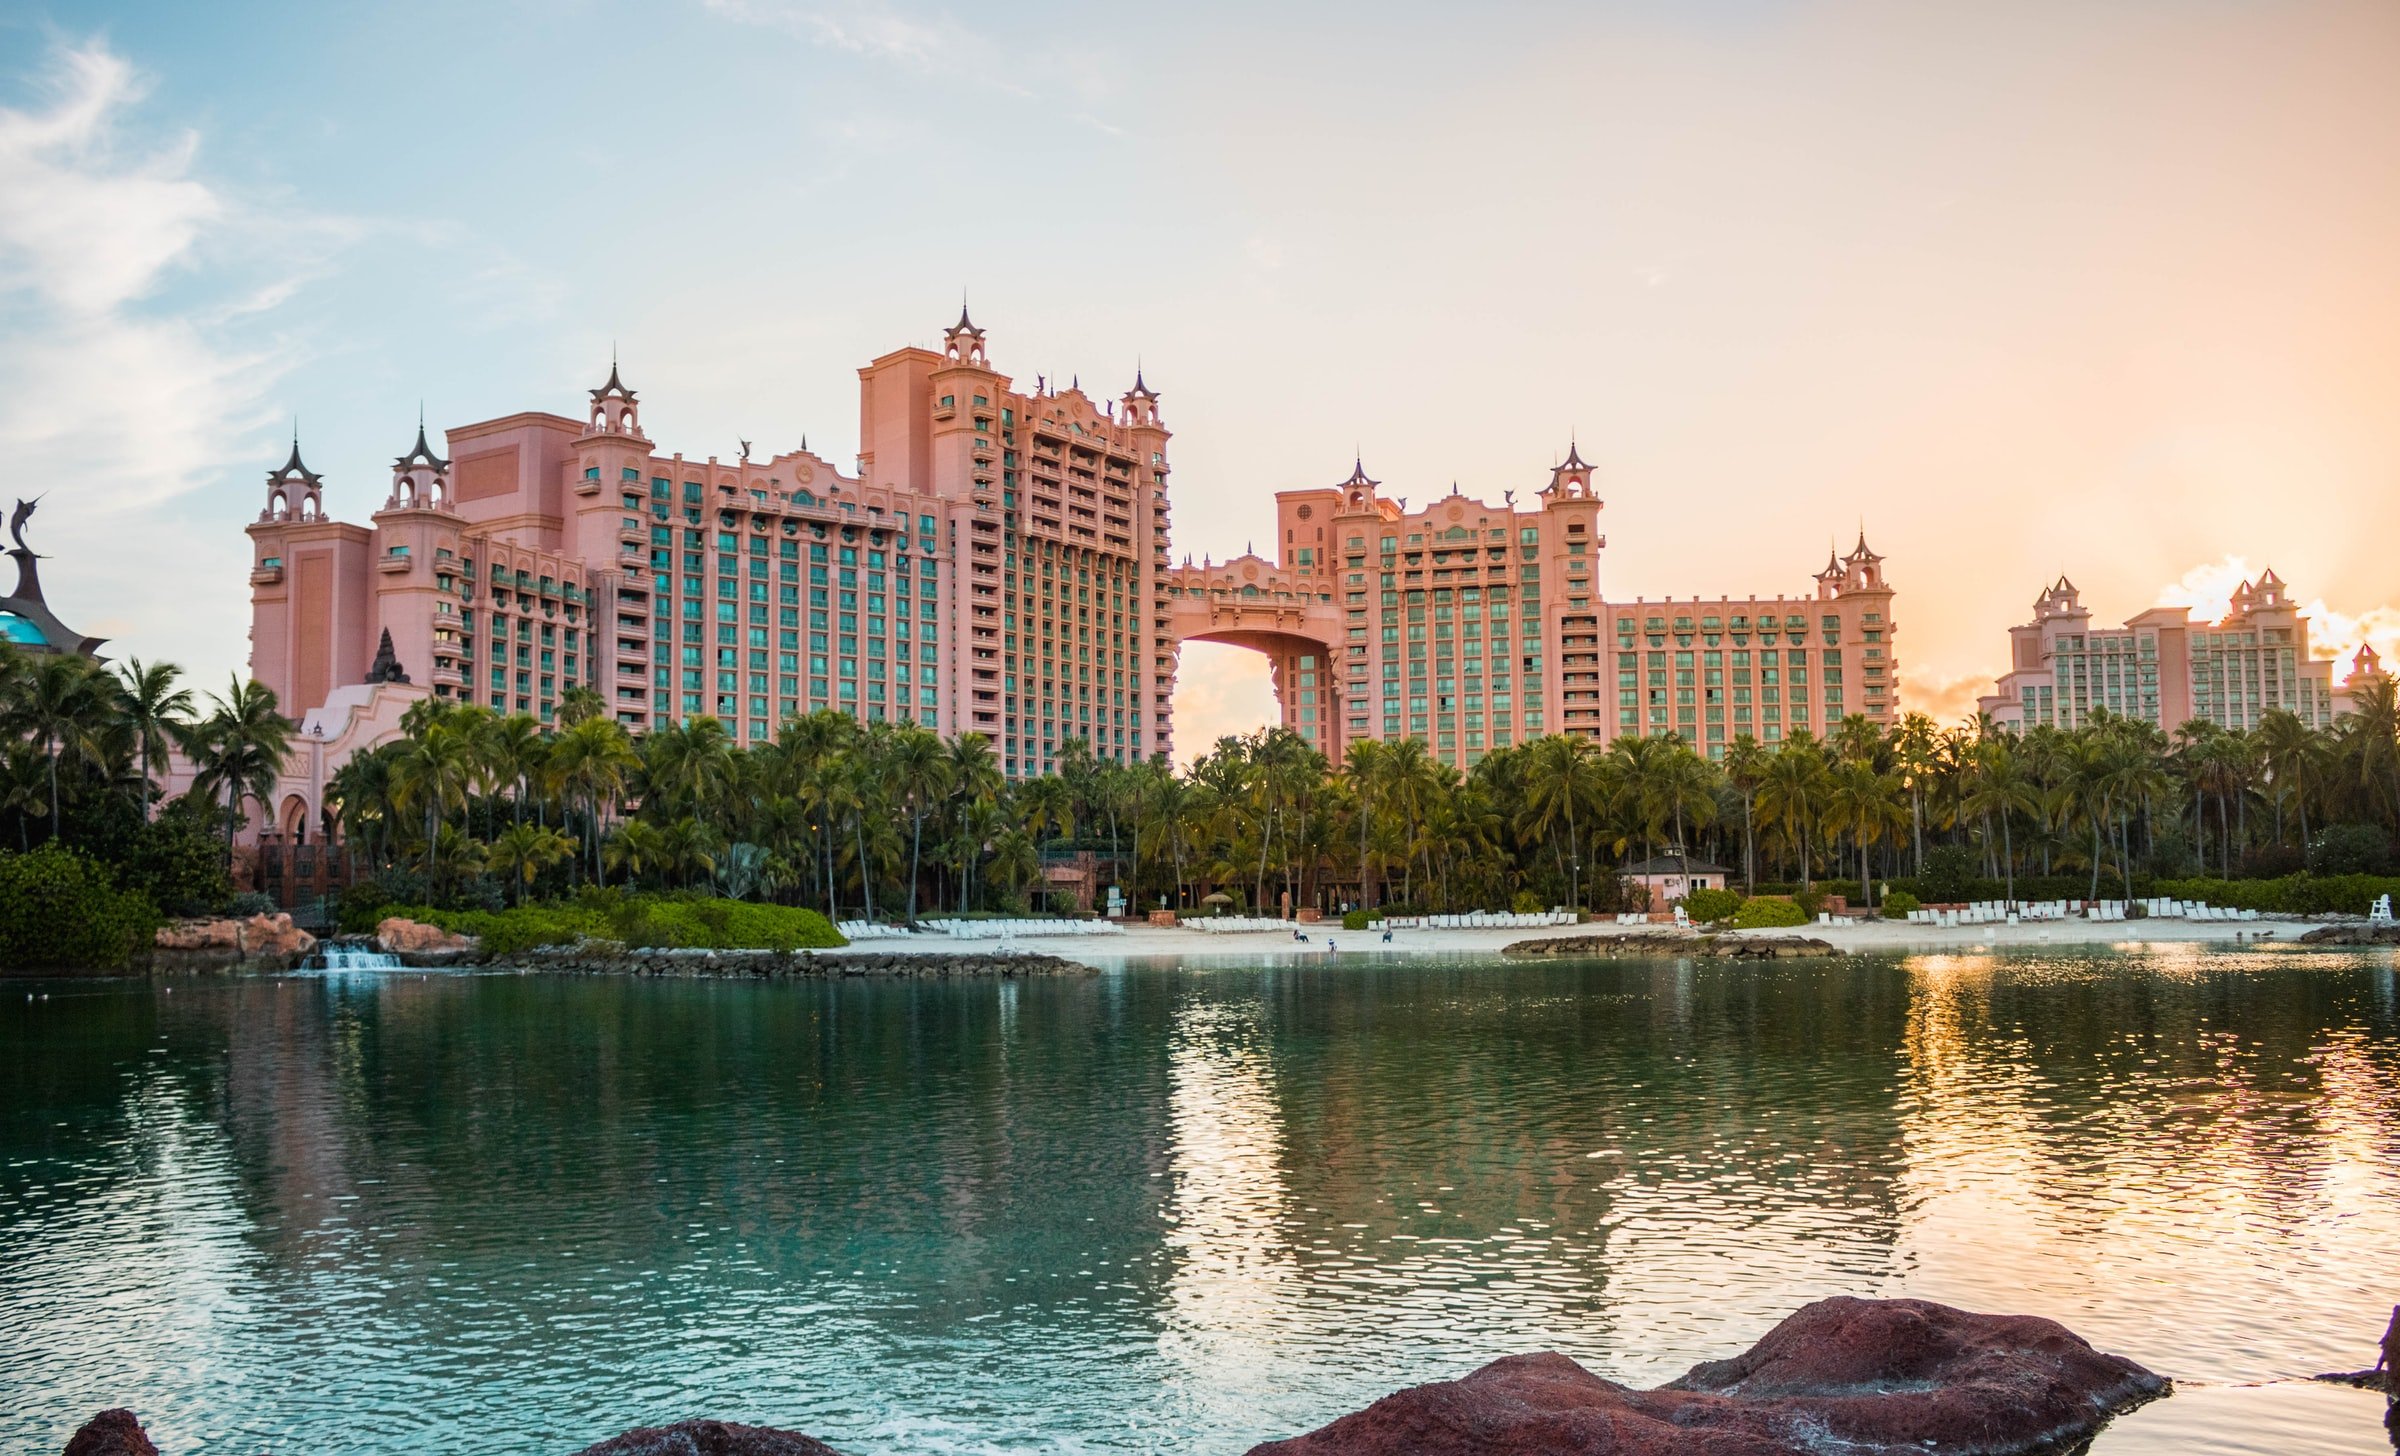 Glücksspiel auf den Bahamas: Das Atlantis Hotel und Casino bietet Karibik Flair satt.